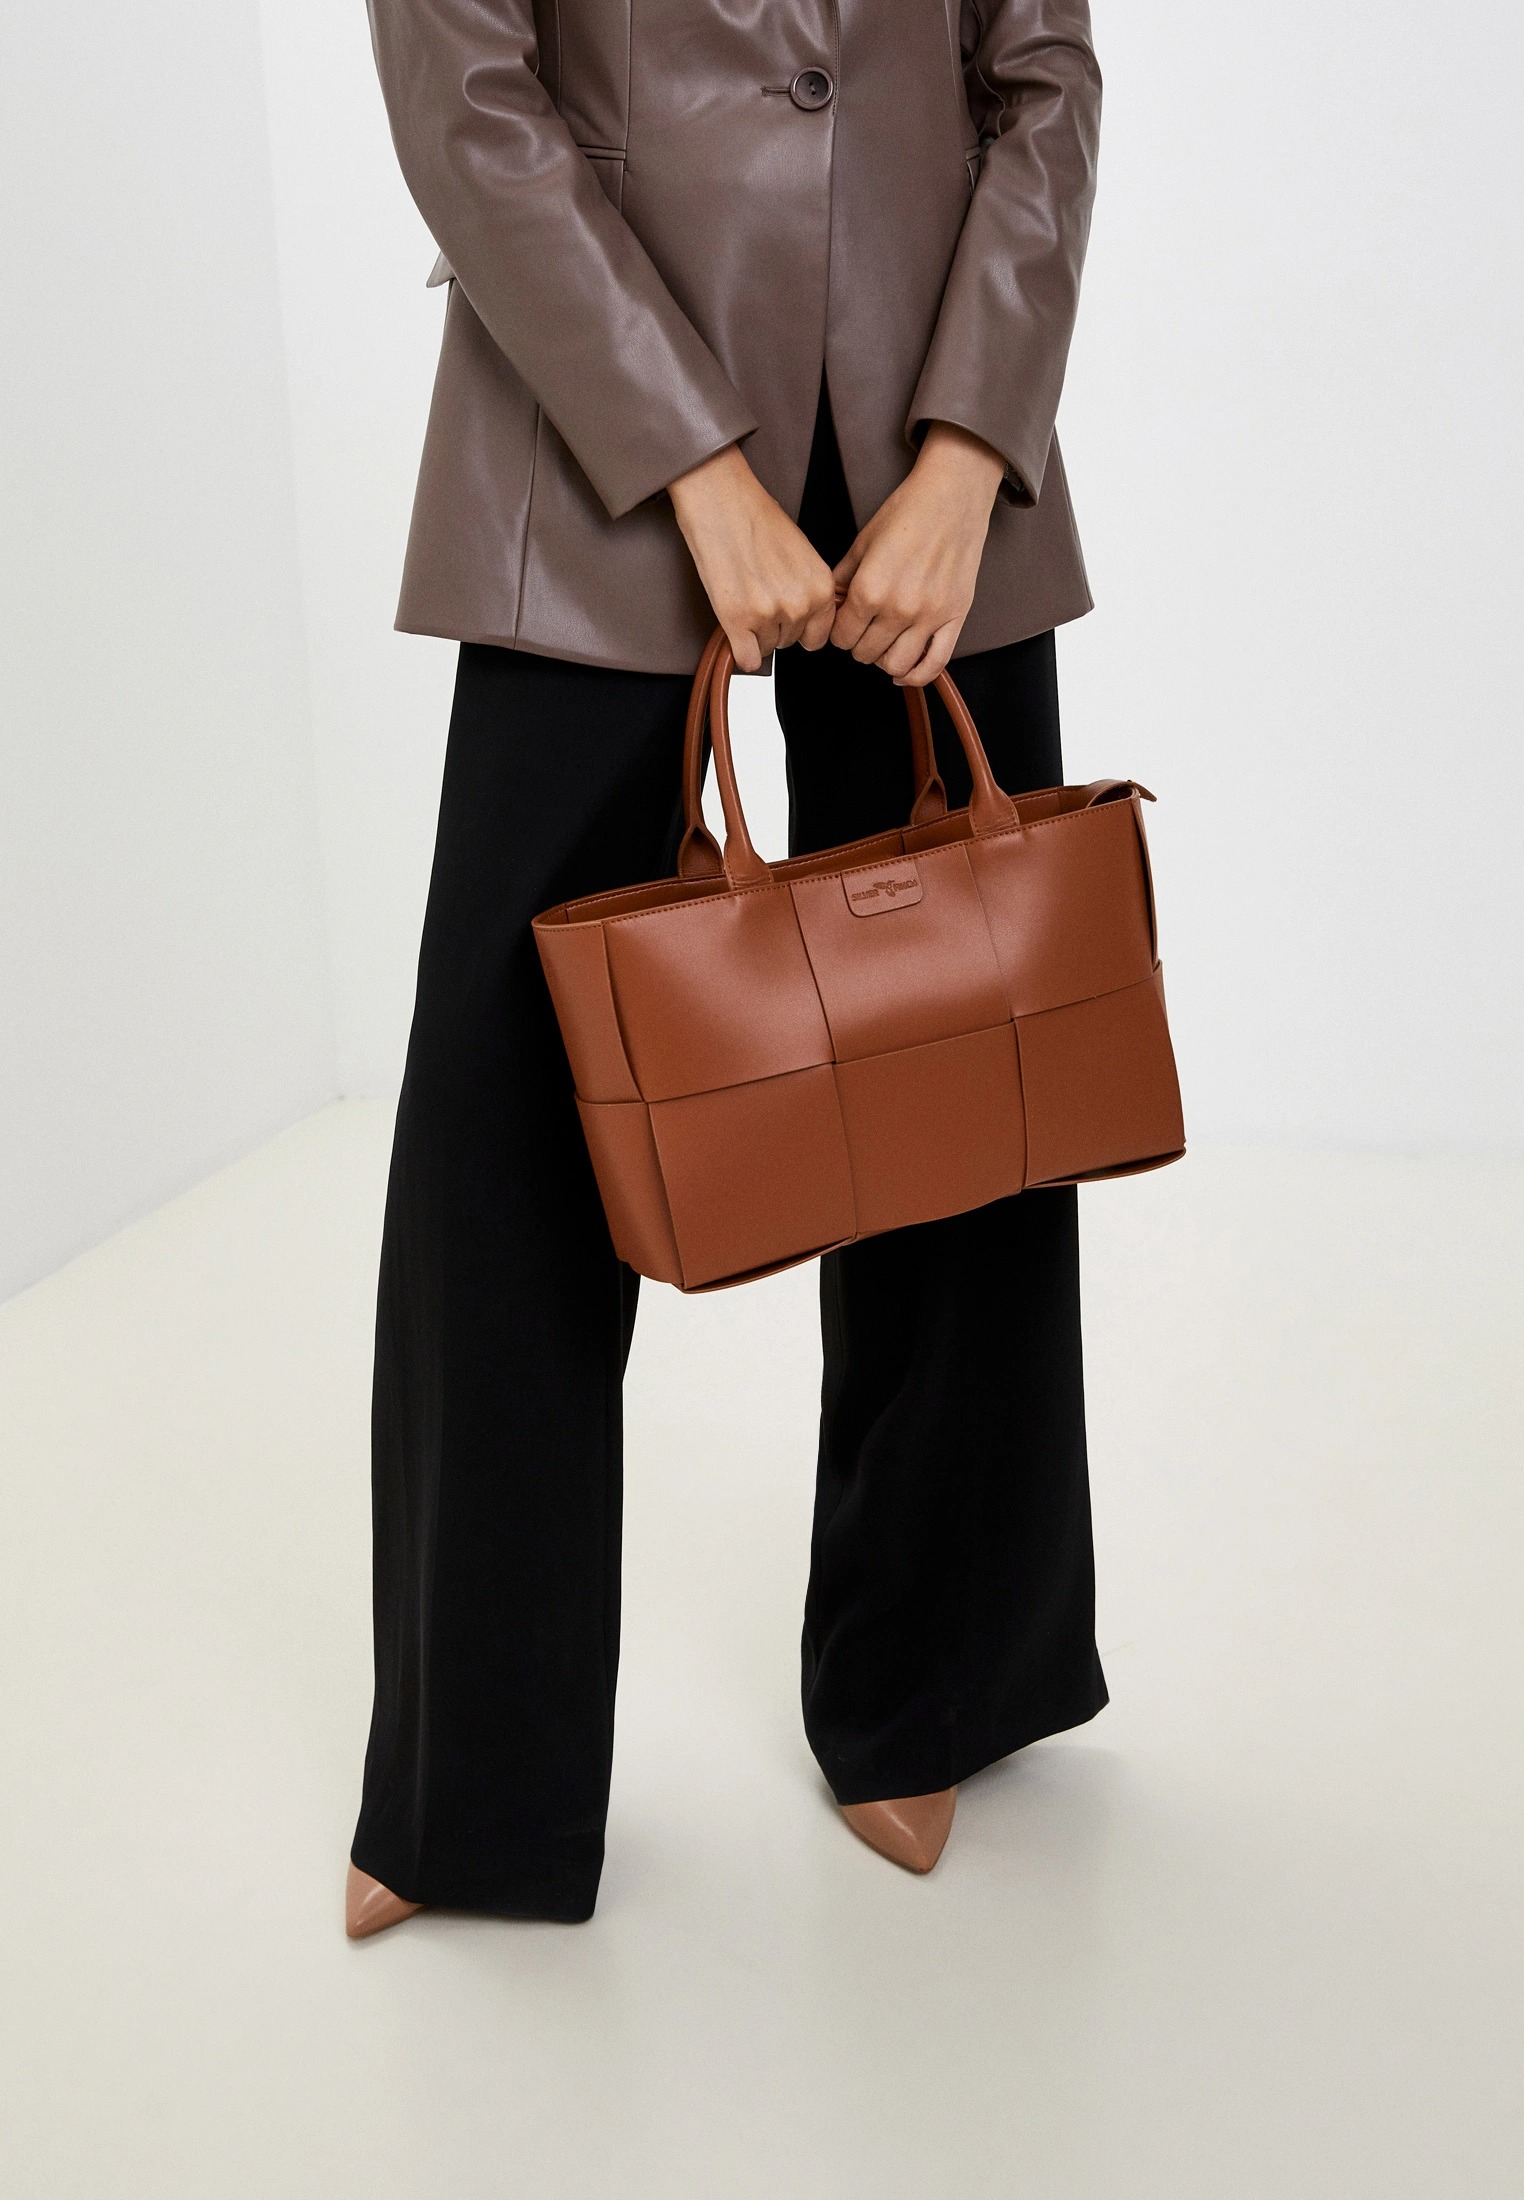 фото: Женские сумки Silver Finch – стильные и изящные, коллекция осень-зама 2022 